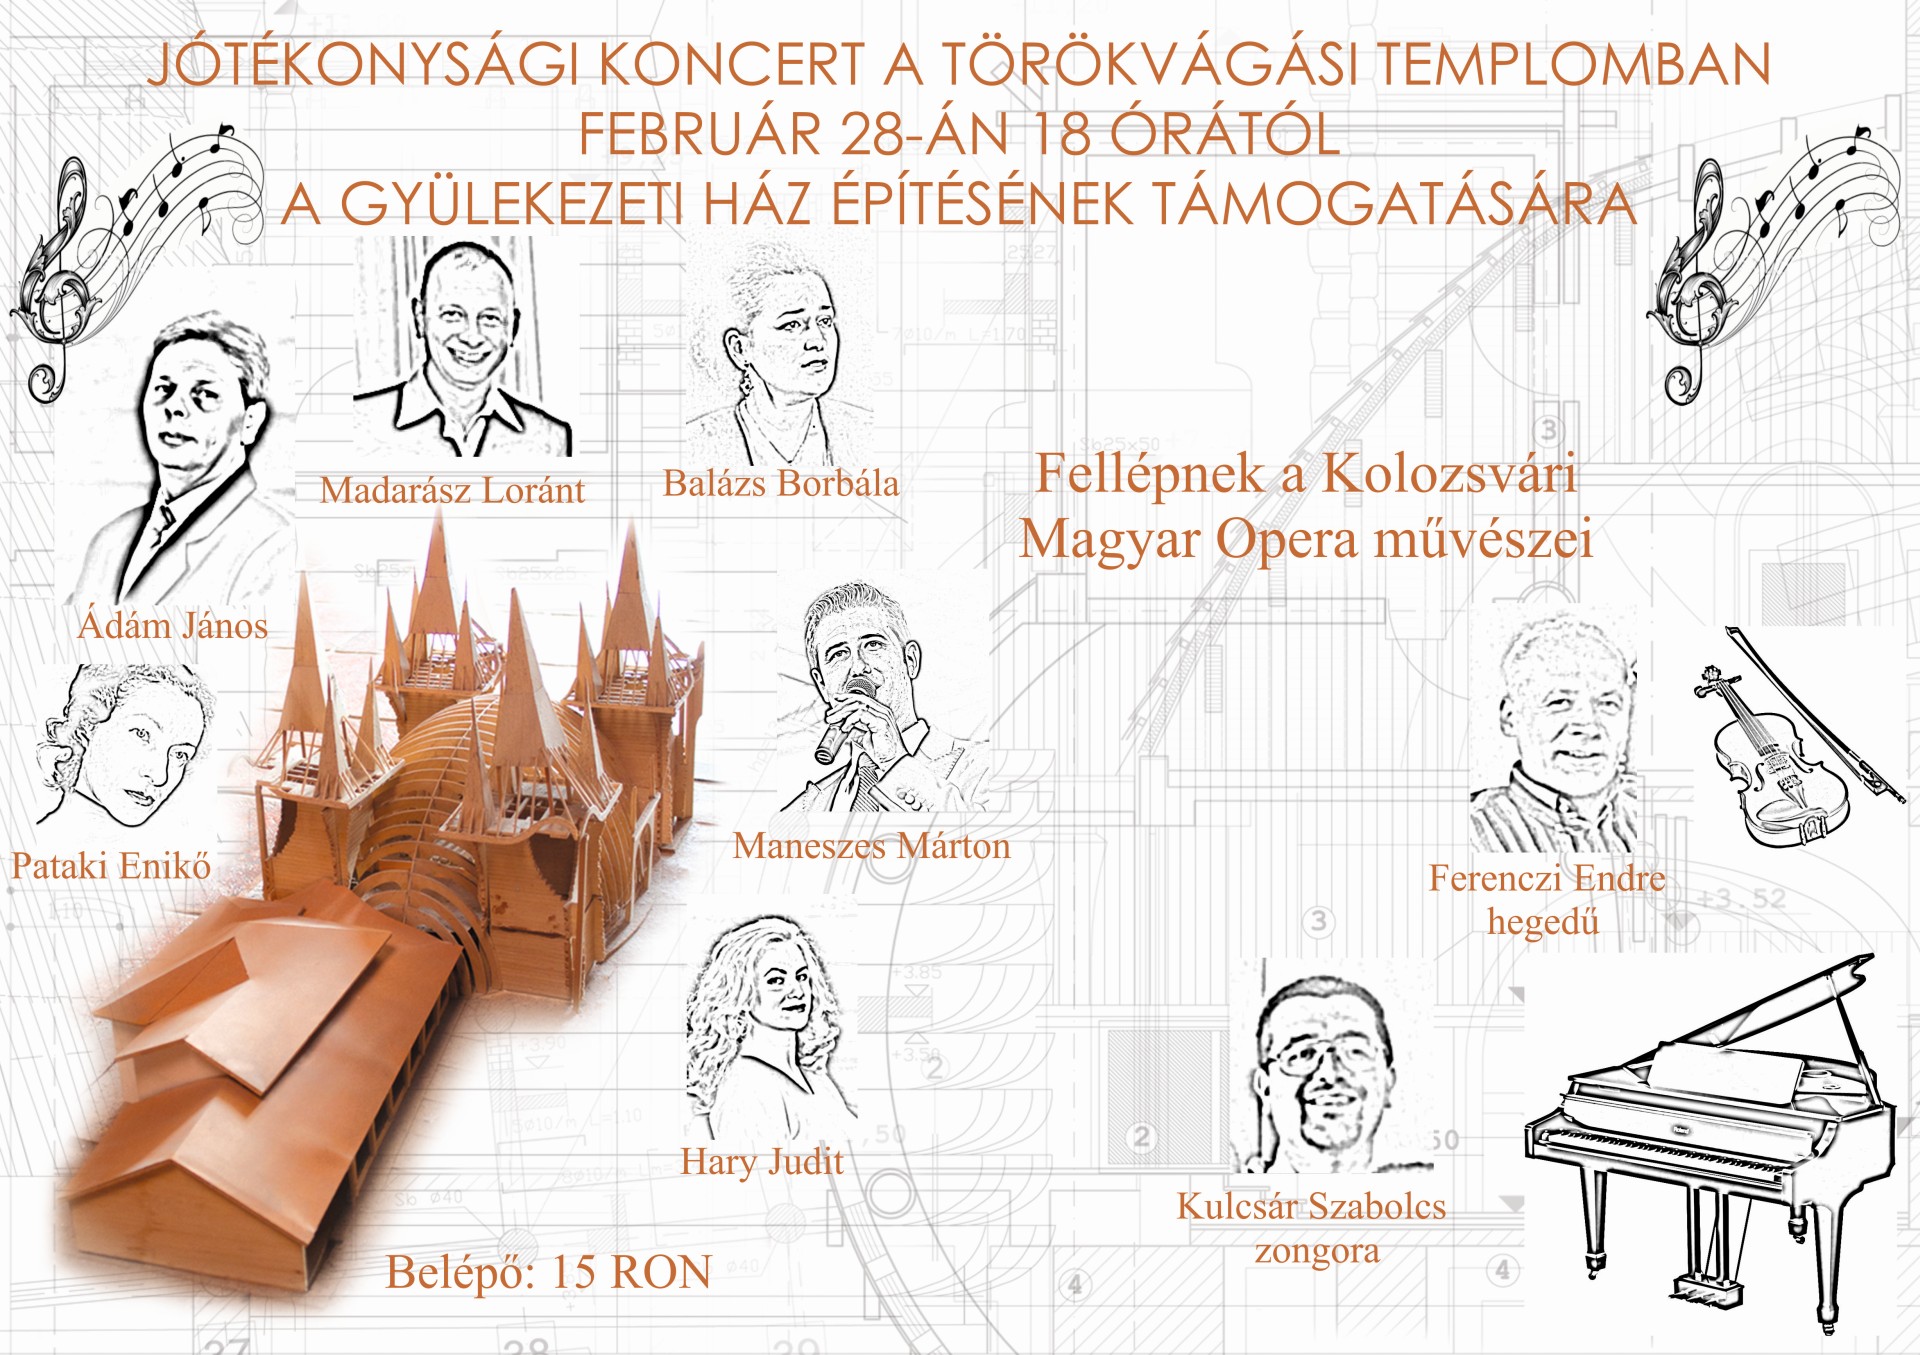 Jótékonysági koncert a törökvágási gyülekezeti ház építésének támogatására